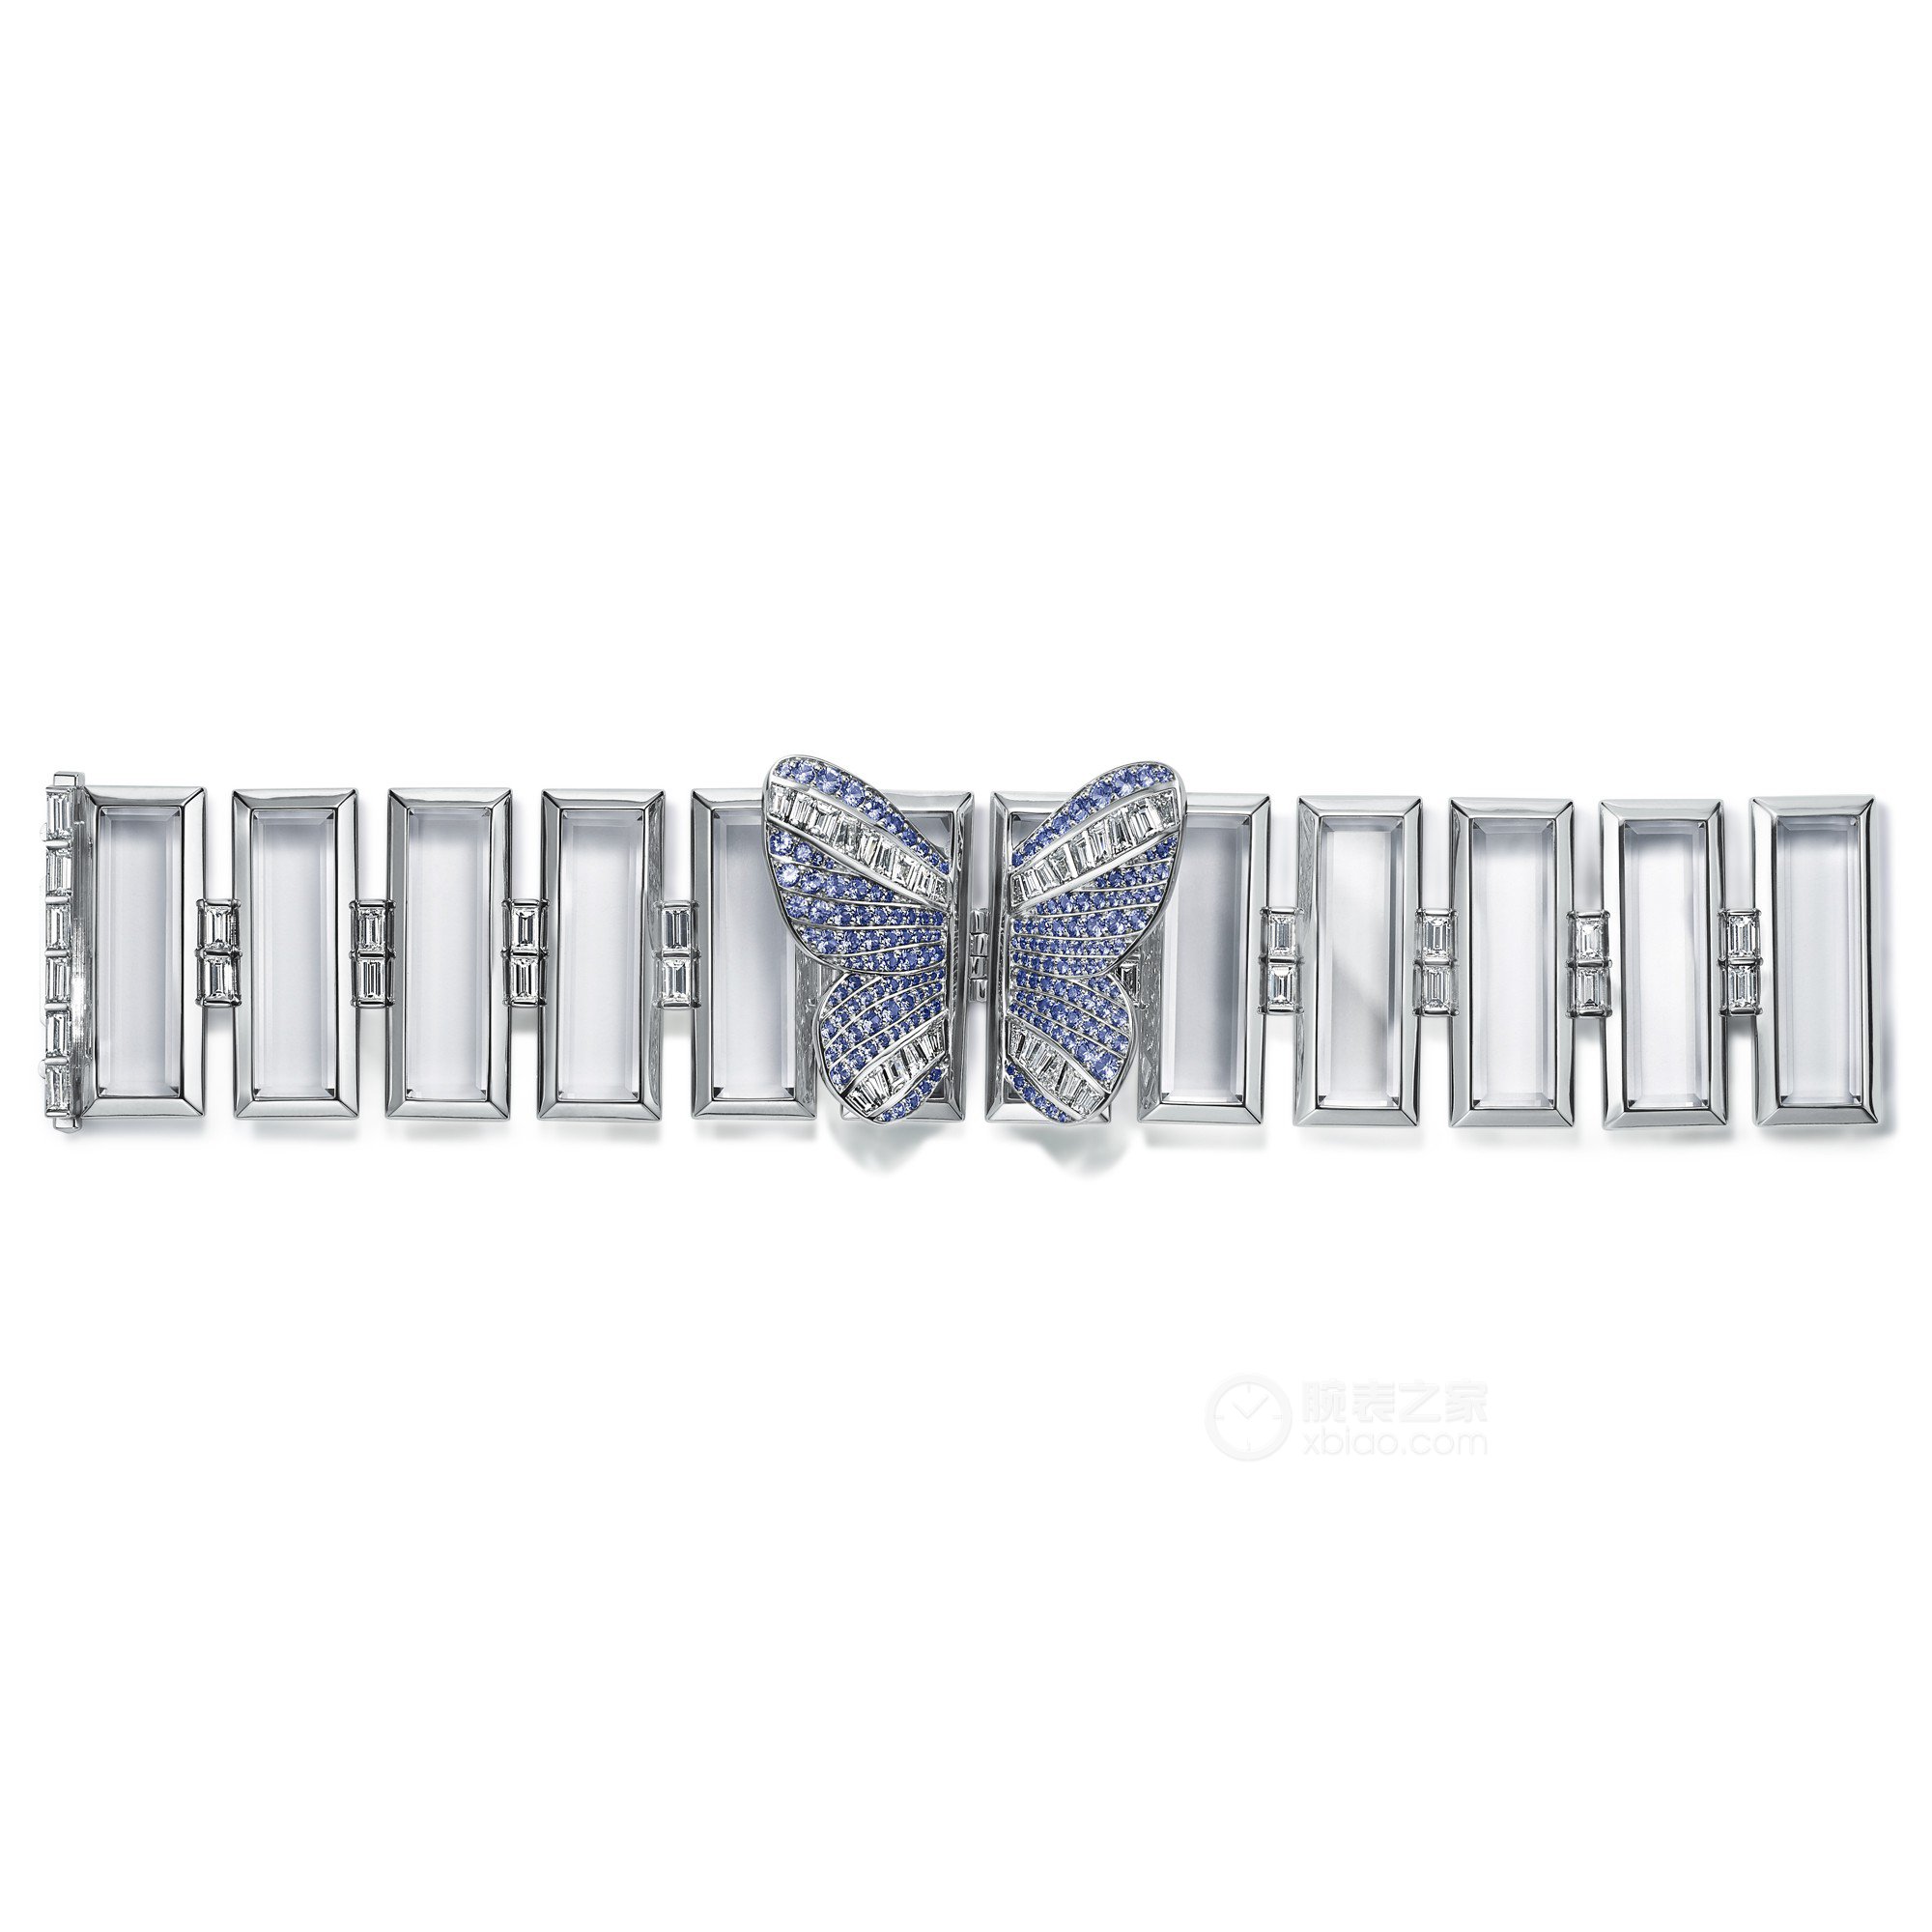 蒂芙尼BLUE BOOK高级珠宝铂金镶嵌矩形阶梯式切割水晶、圆形蓝宝石及狭长形钻石蝴蝶造型手镯手镯